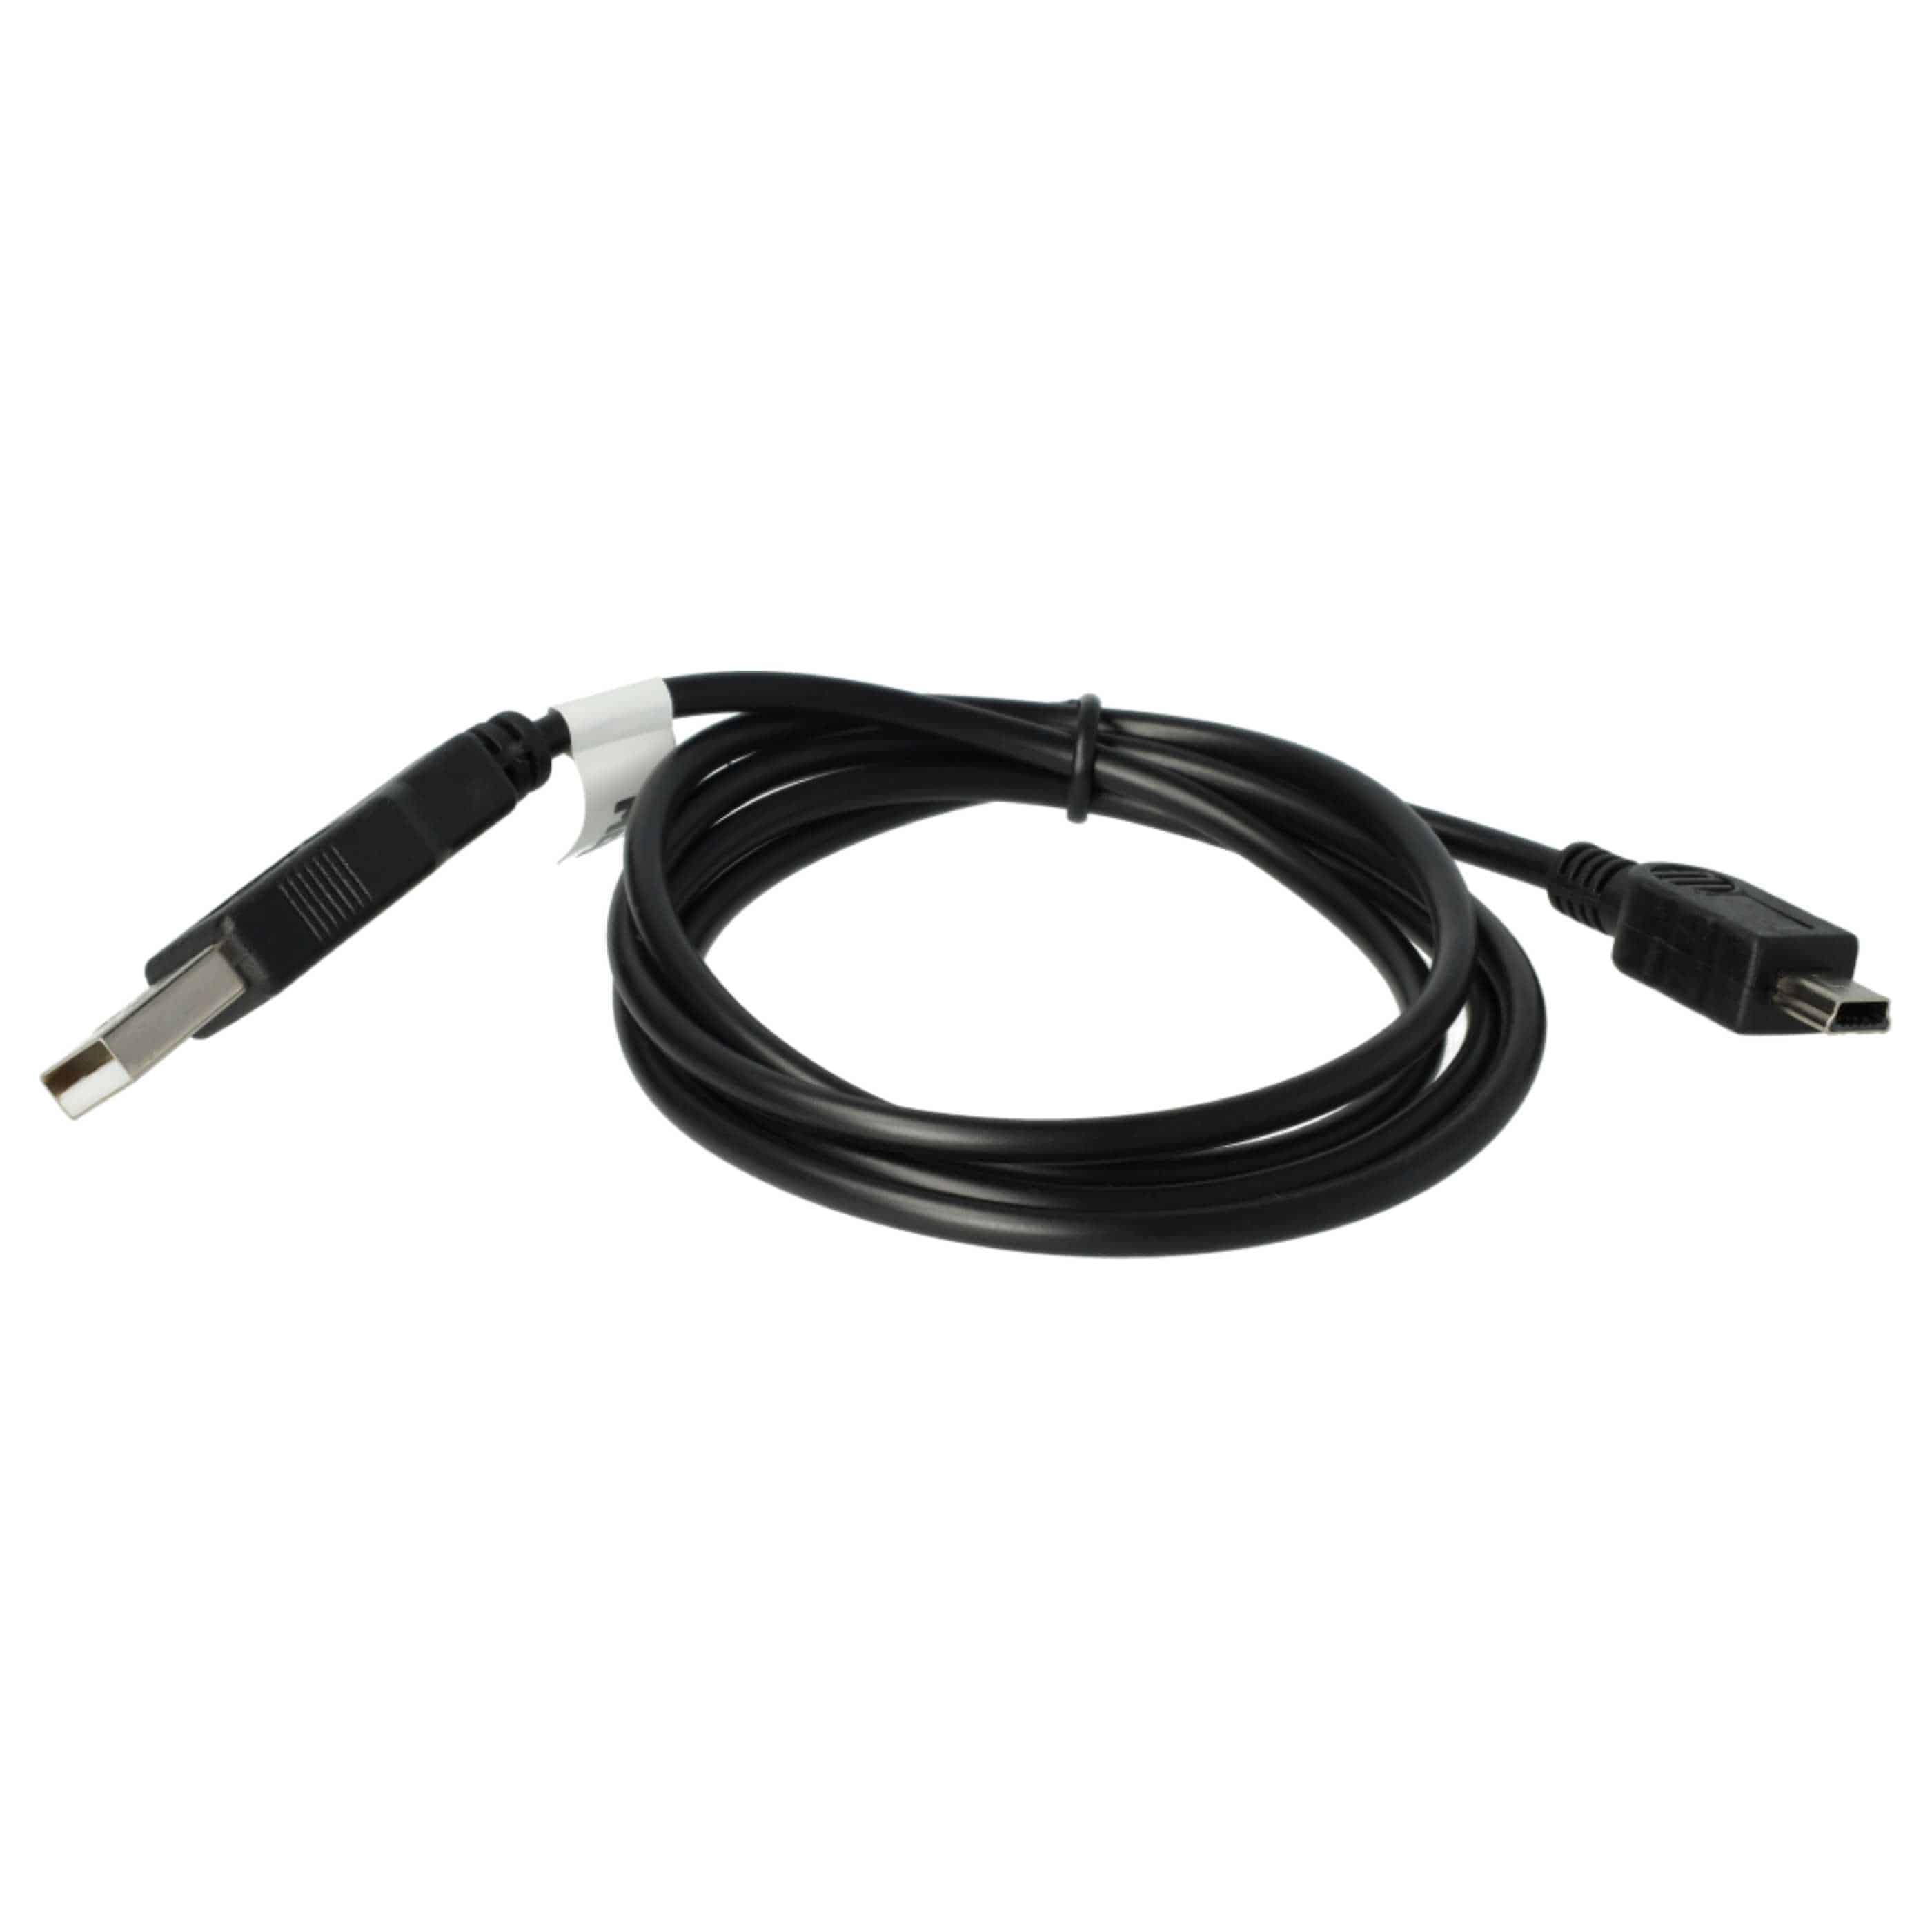 Kabel USB do transmisji danych do komórki Nokia E51 - kabel ładujący 2w1 - 100 cm